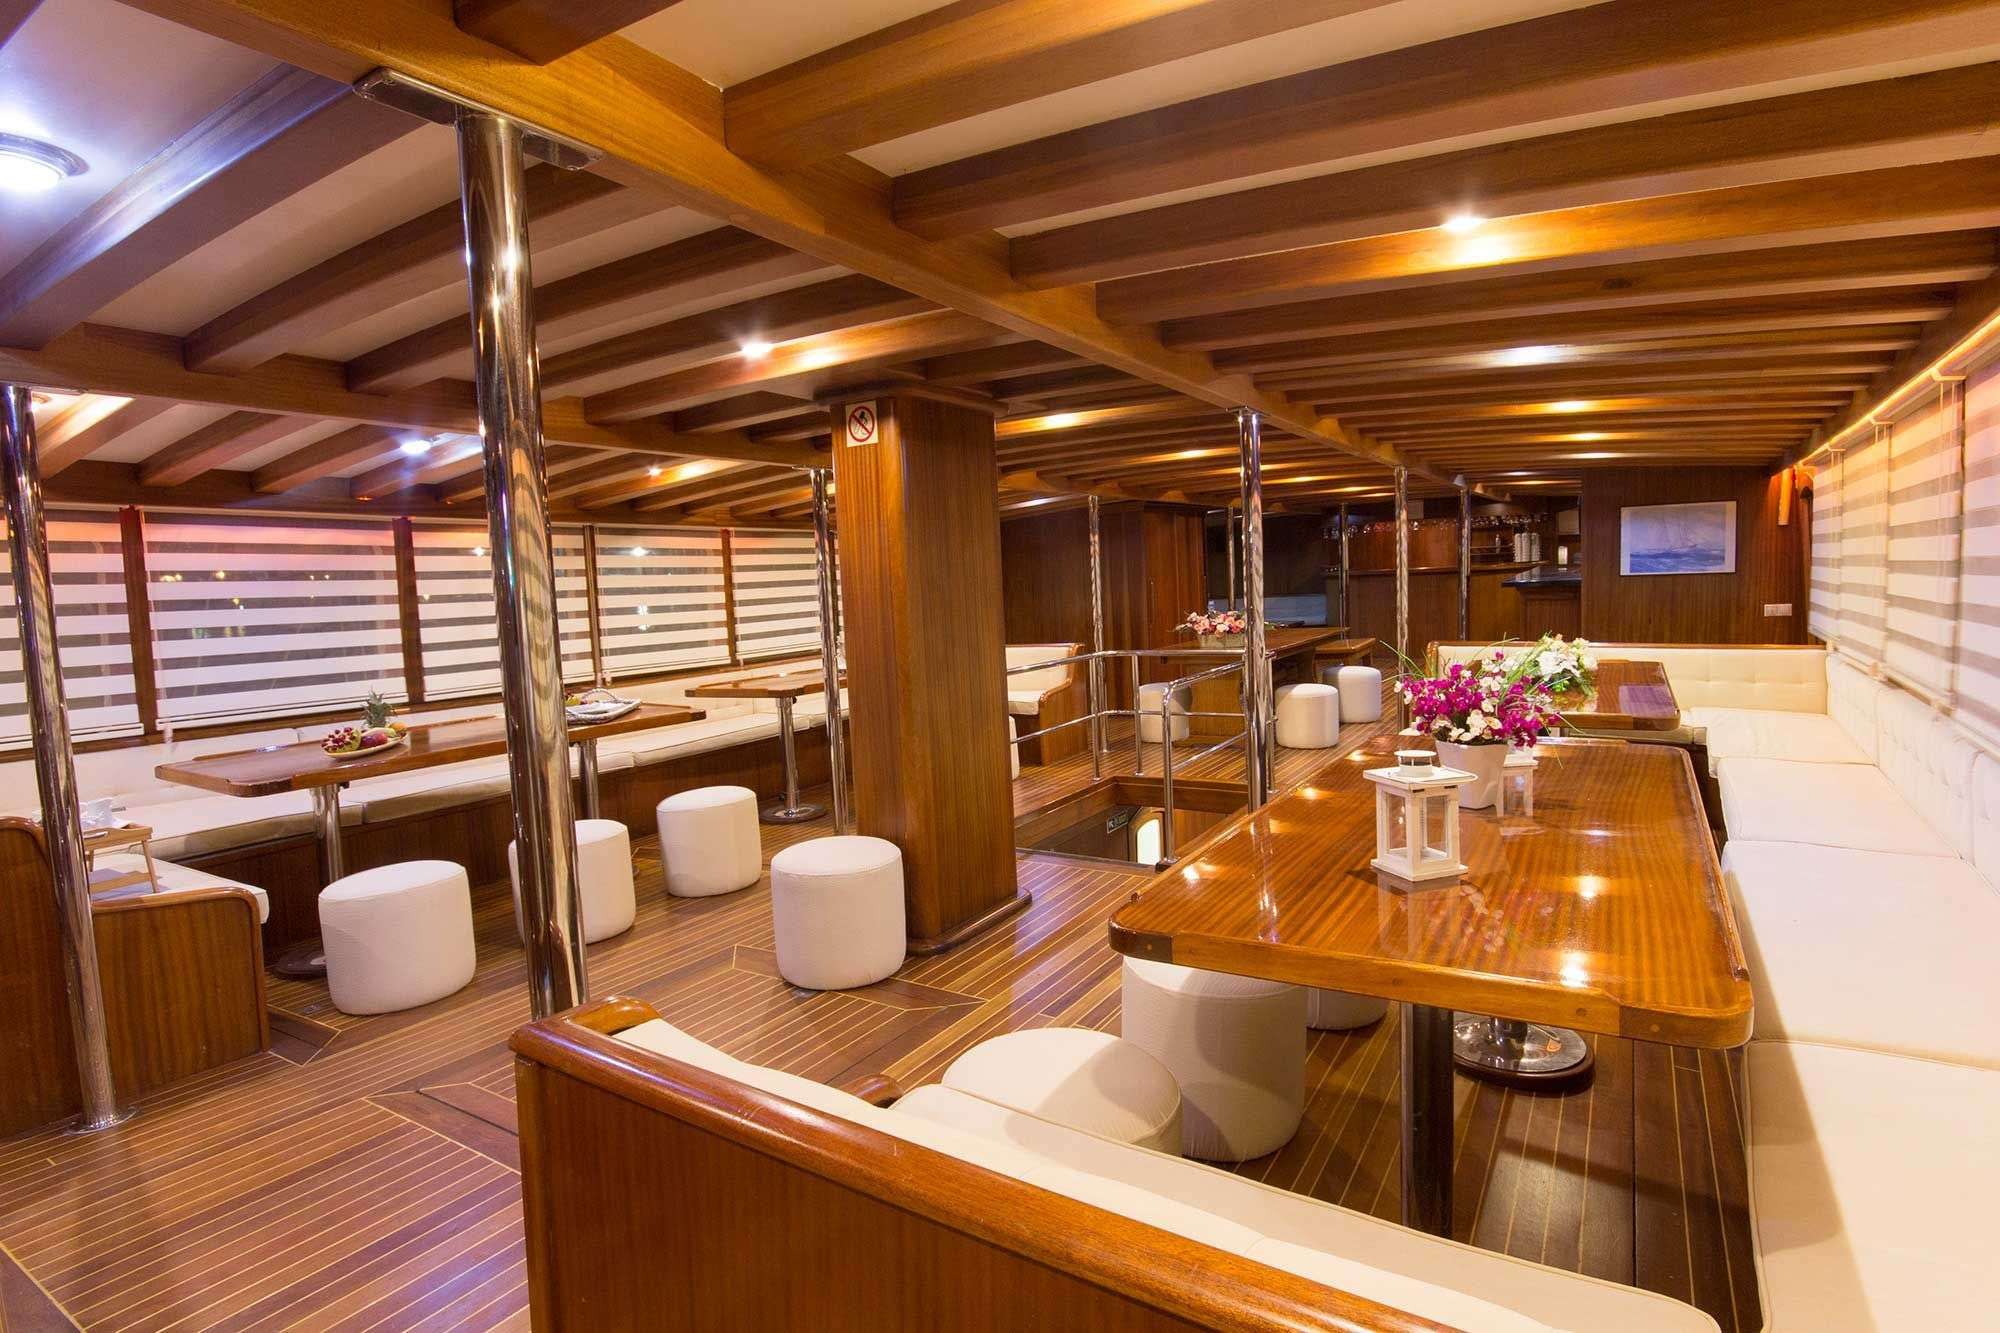 BOREAS - Yacht Charter Antalya & Boat hire in Greece & Turkey 3